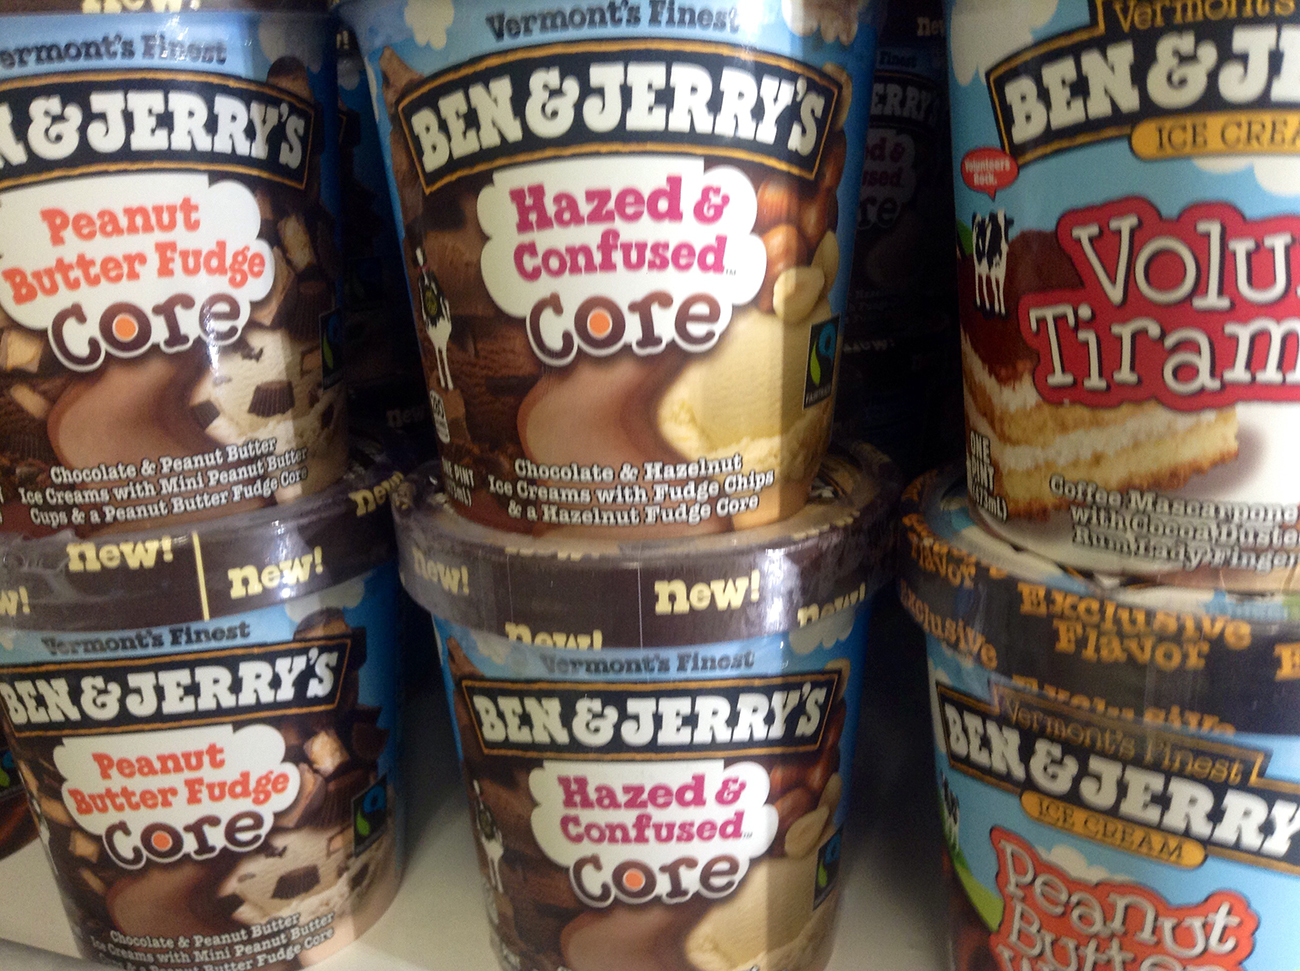 Una fotografía muestra pilas de pintas de helado de Ben y Jerry.